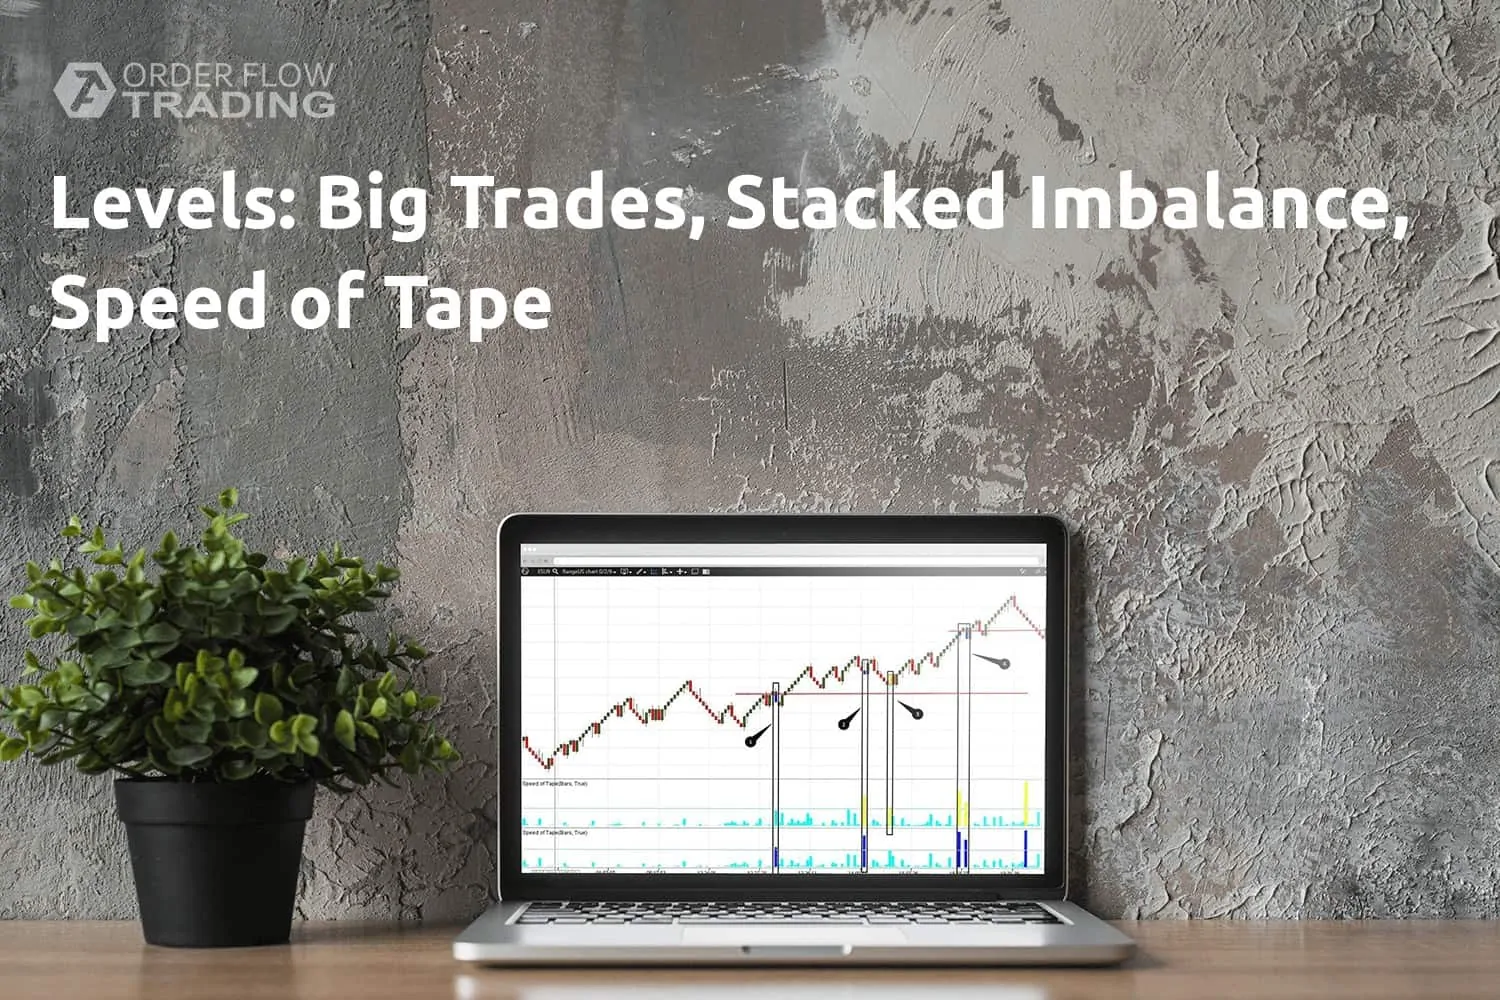 Трейдинг по уровням с индикаторами Big Trades, Stacked Imbalance, Speed of Tape